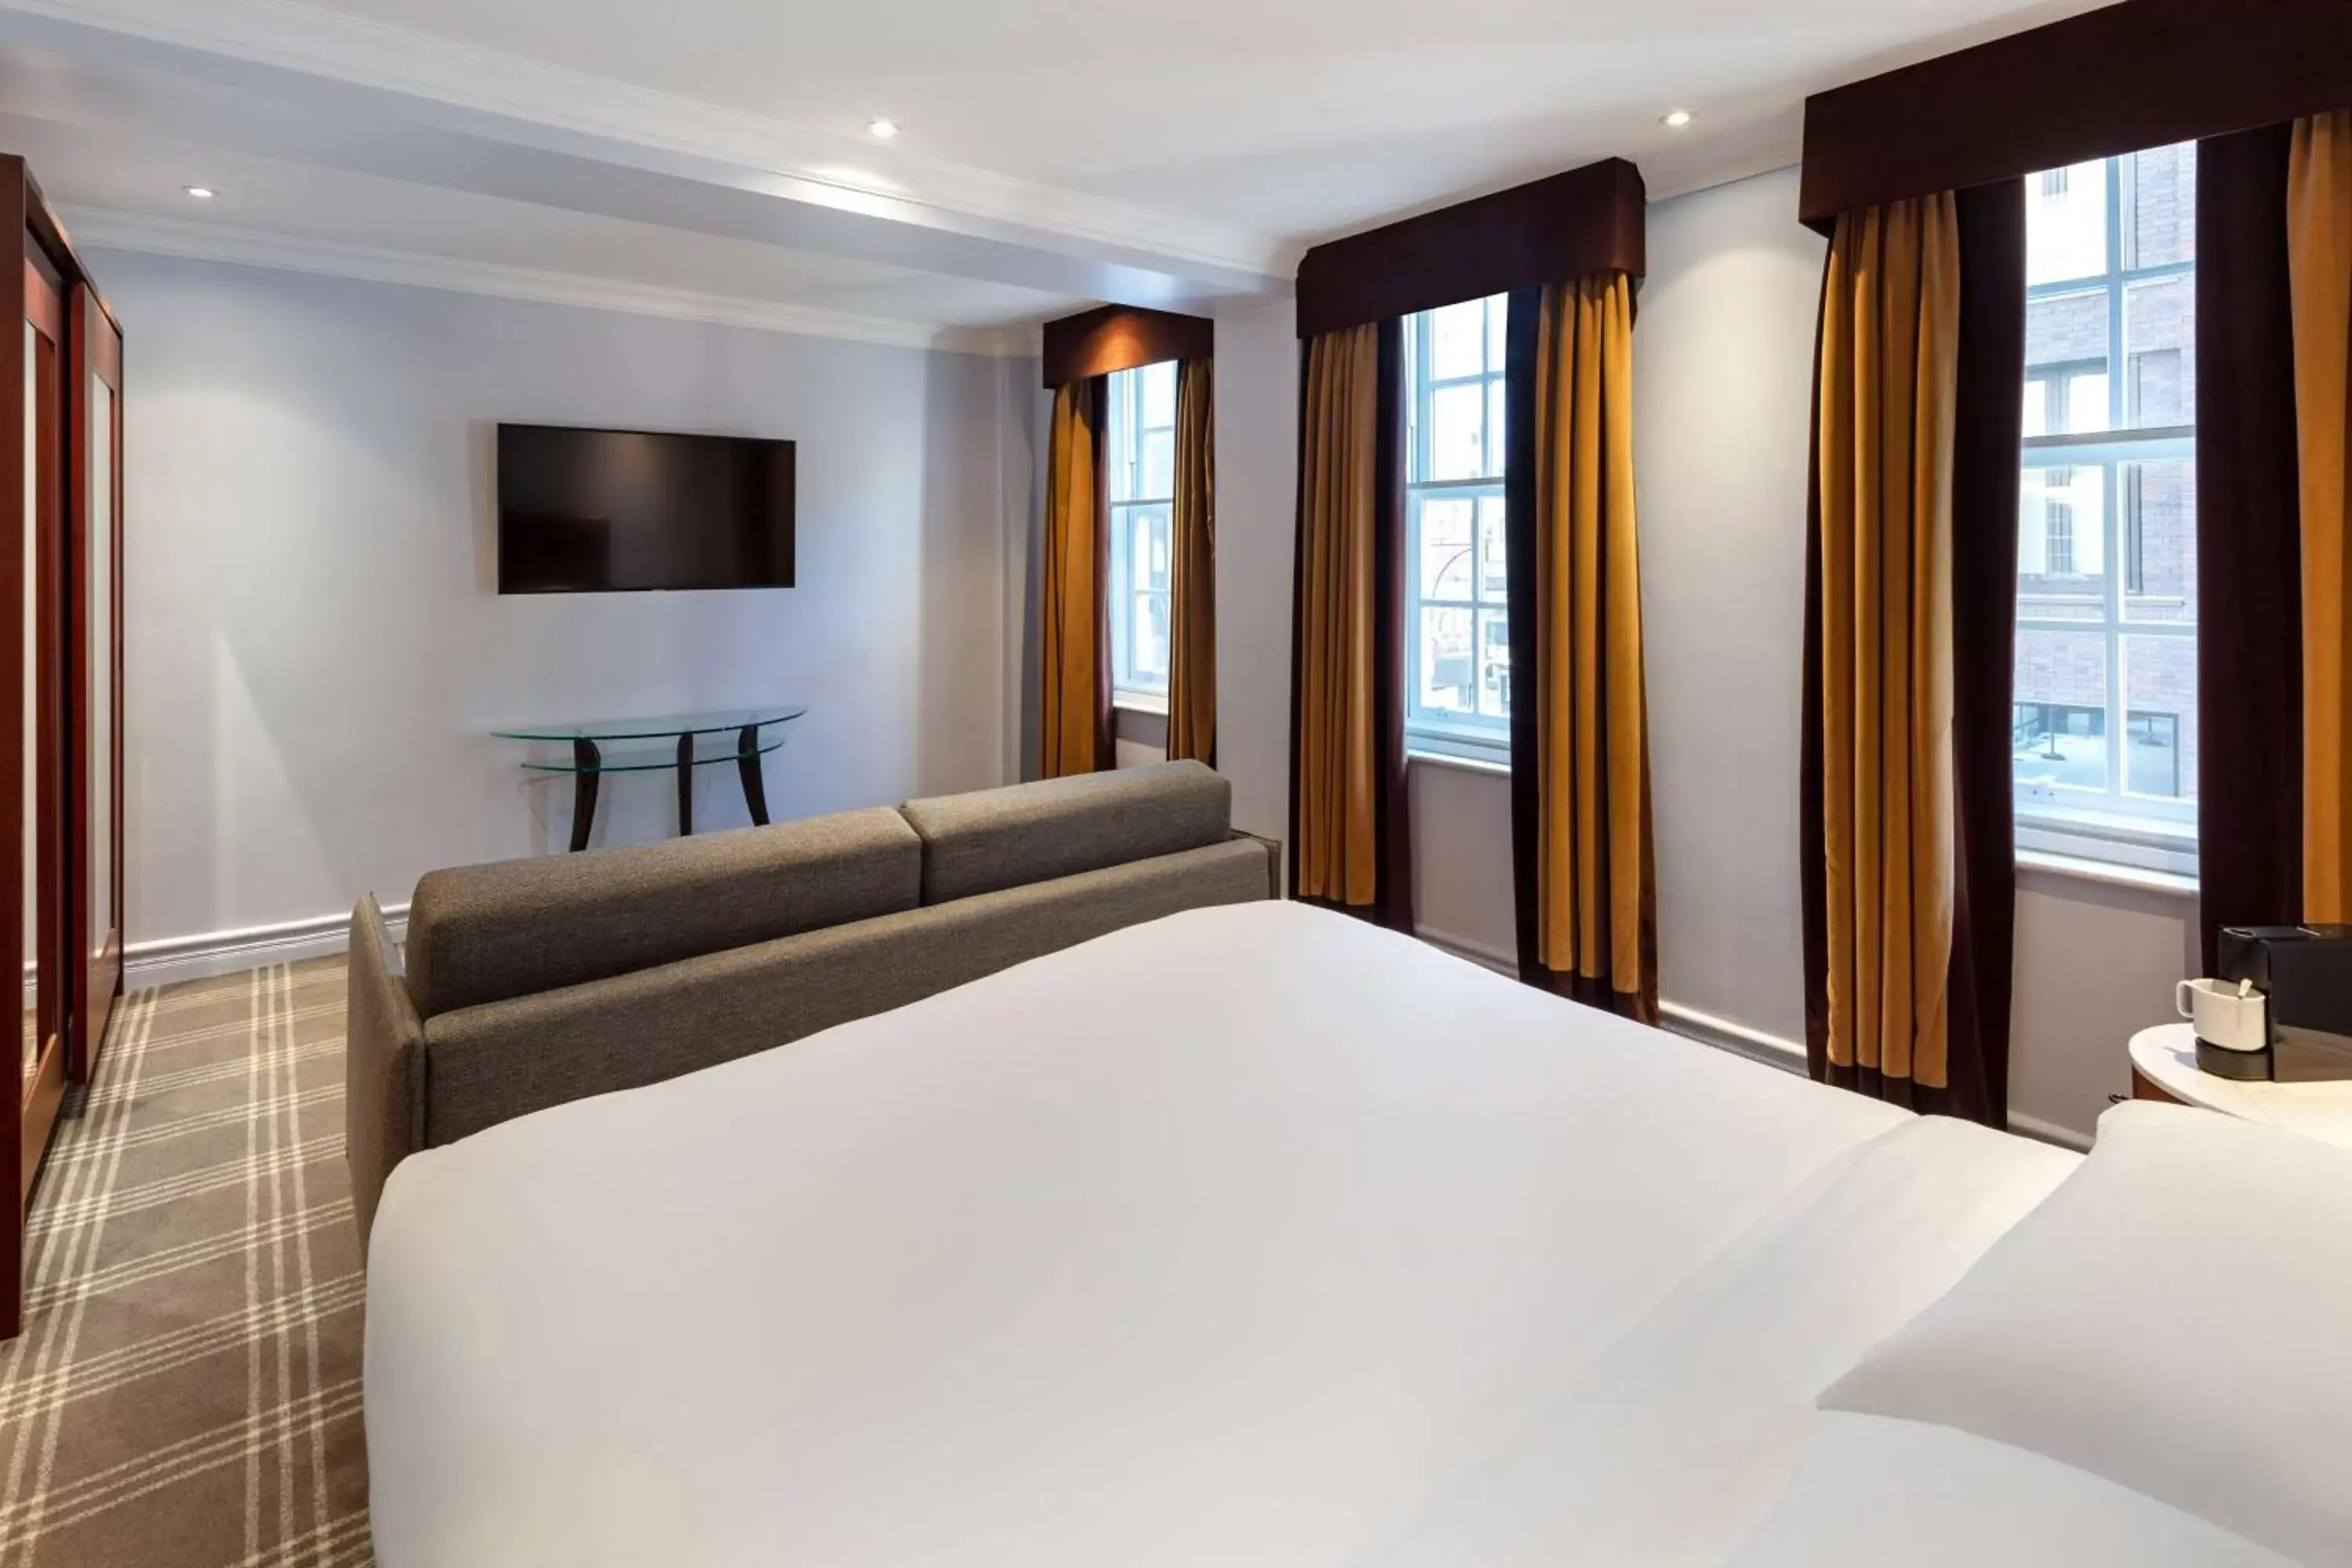 Bedroom in Radisson Blu Edwardian Bond Street Hotel, London